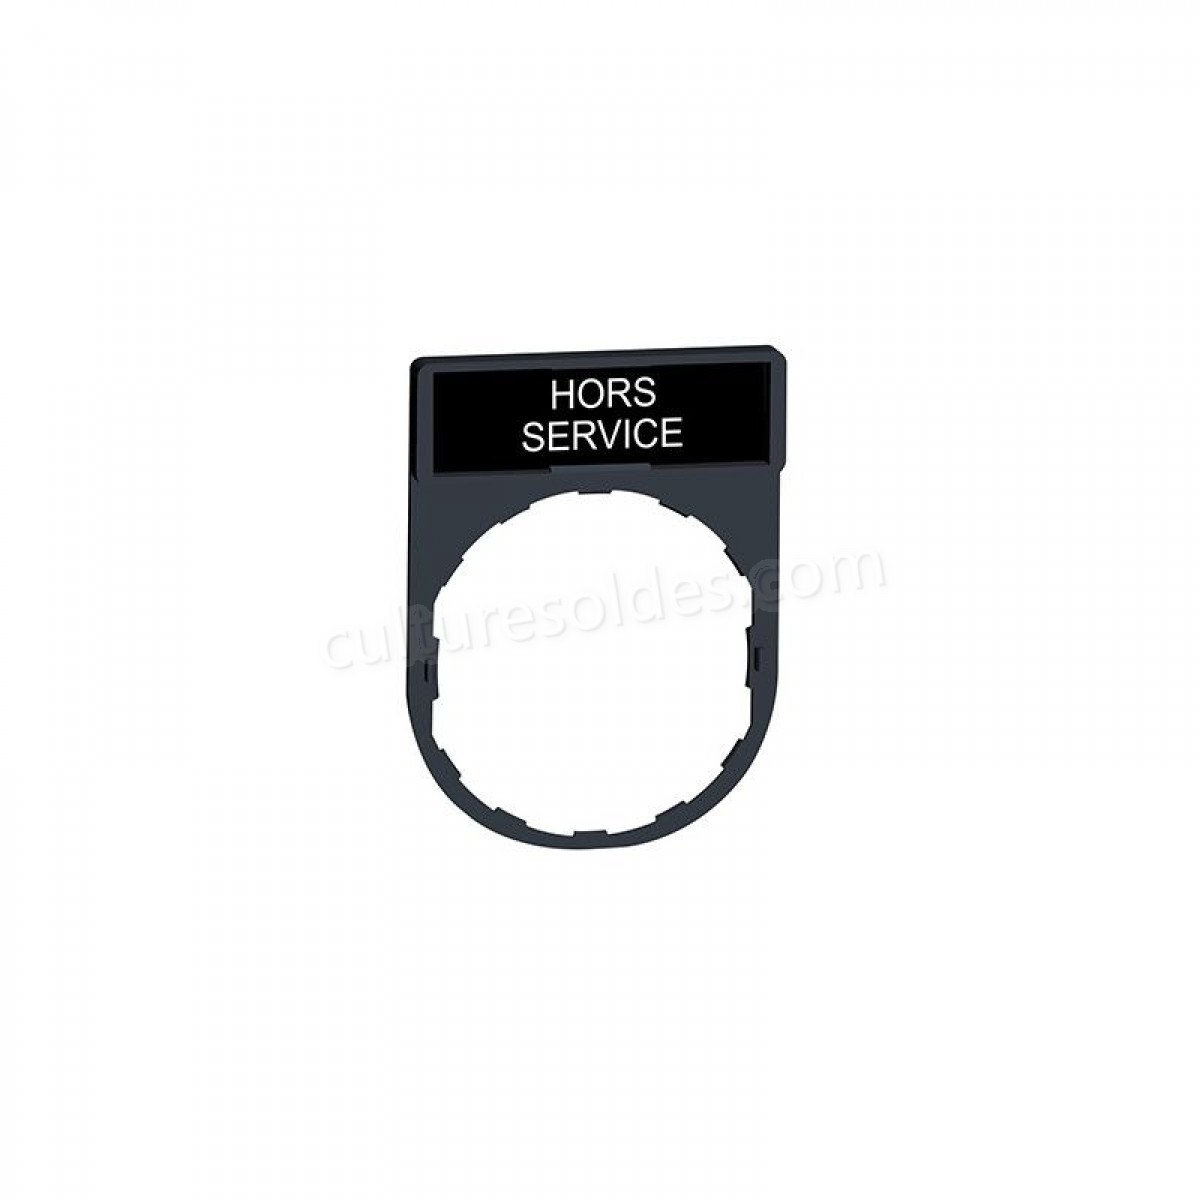 Porte étiquette Harmony - plat 30x40 - pour étiquette 'HORS-SERVICE' 8x27 soldes en ligne - Porte étiquette Harmony - plat 30x40 - pour étiquette 'HORS-SERVICE' 8x27 soldes en ligne